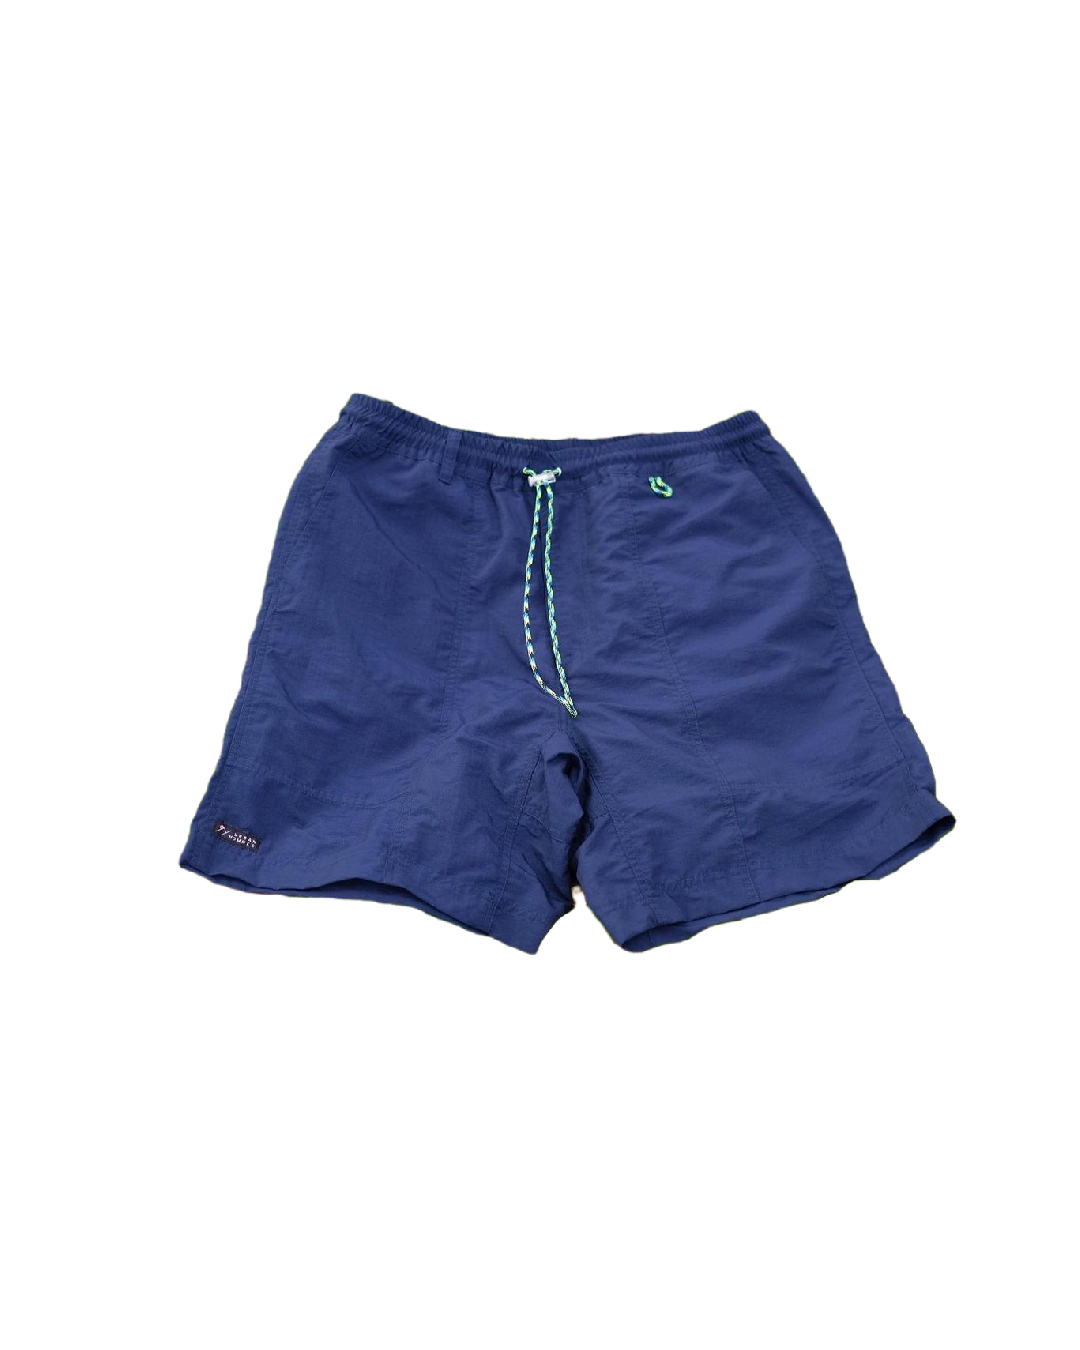 MONT Nylon Shorts (Navy)